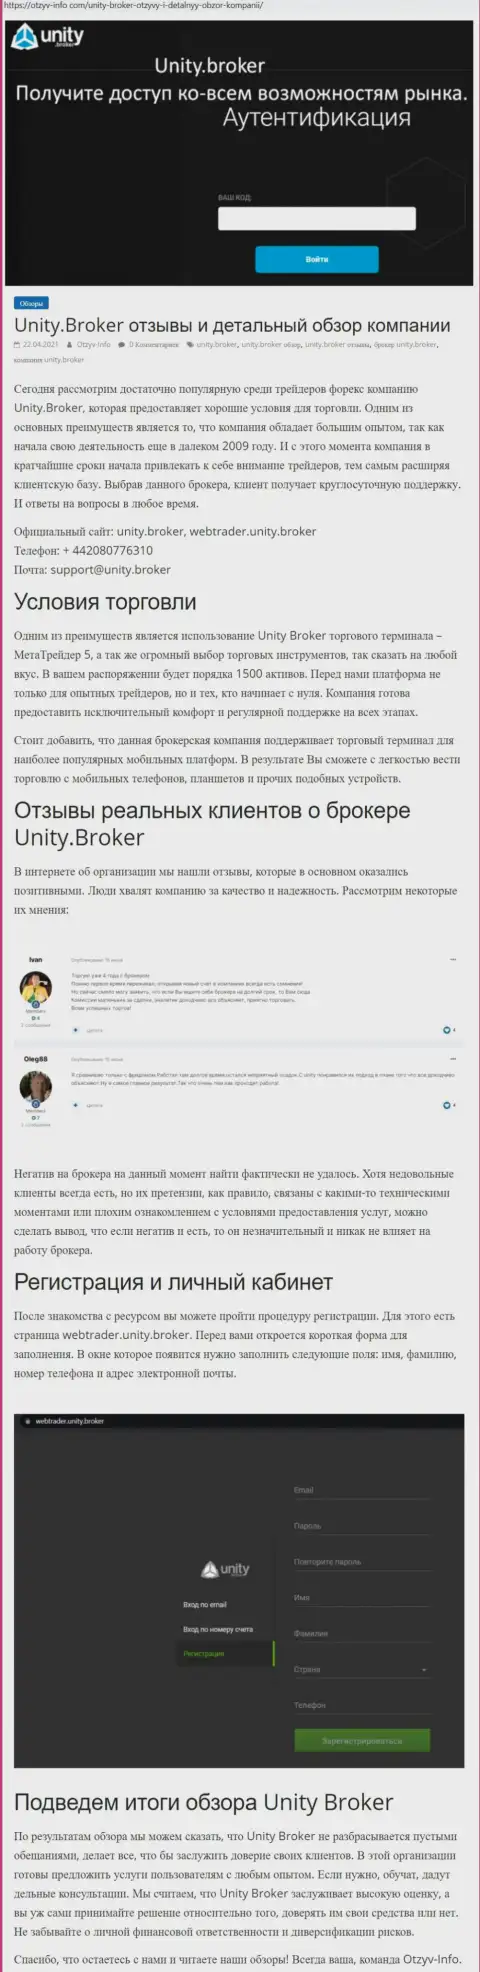 Обзор деятельности форекс-дилинговой компании Unity Broker на web-сайте отзыв-инфо ком